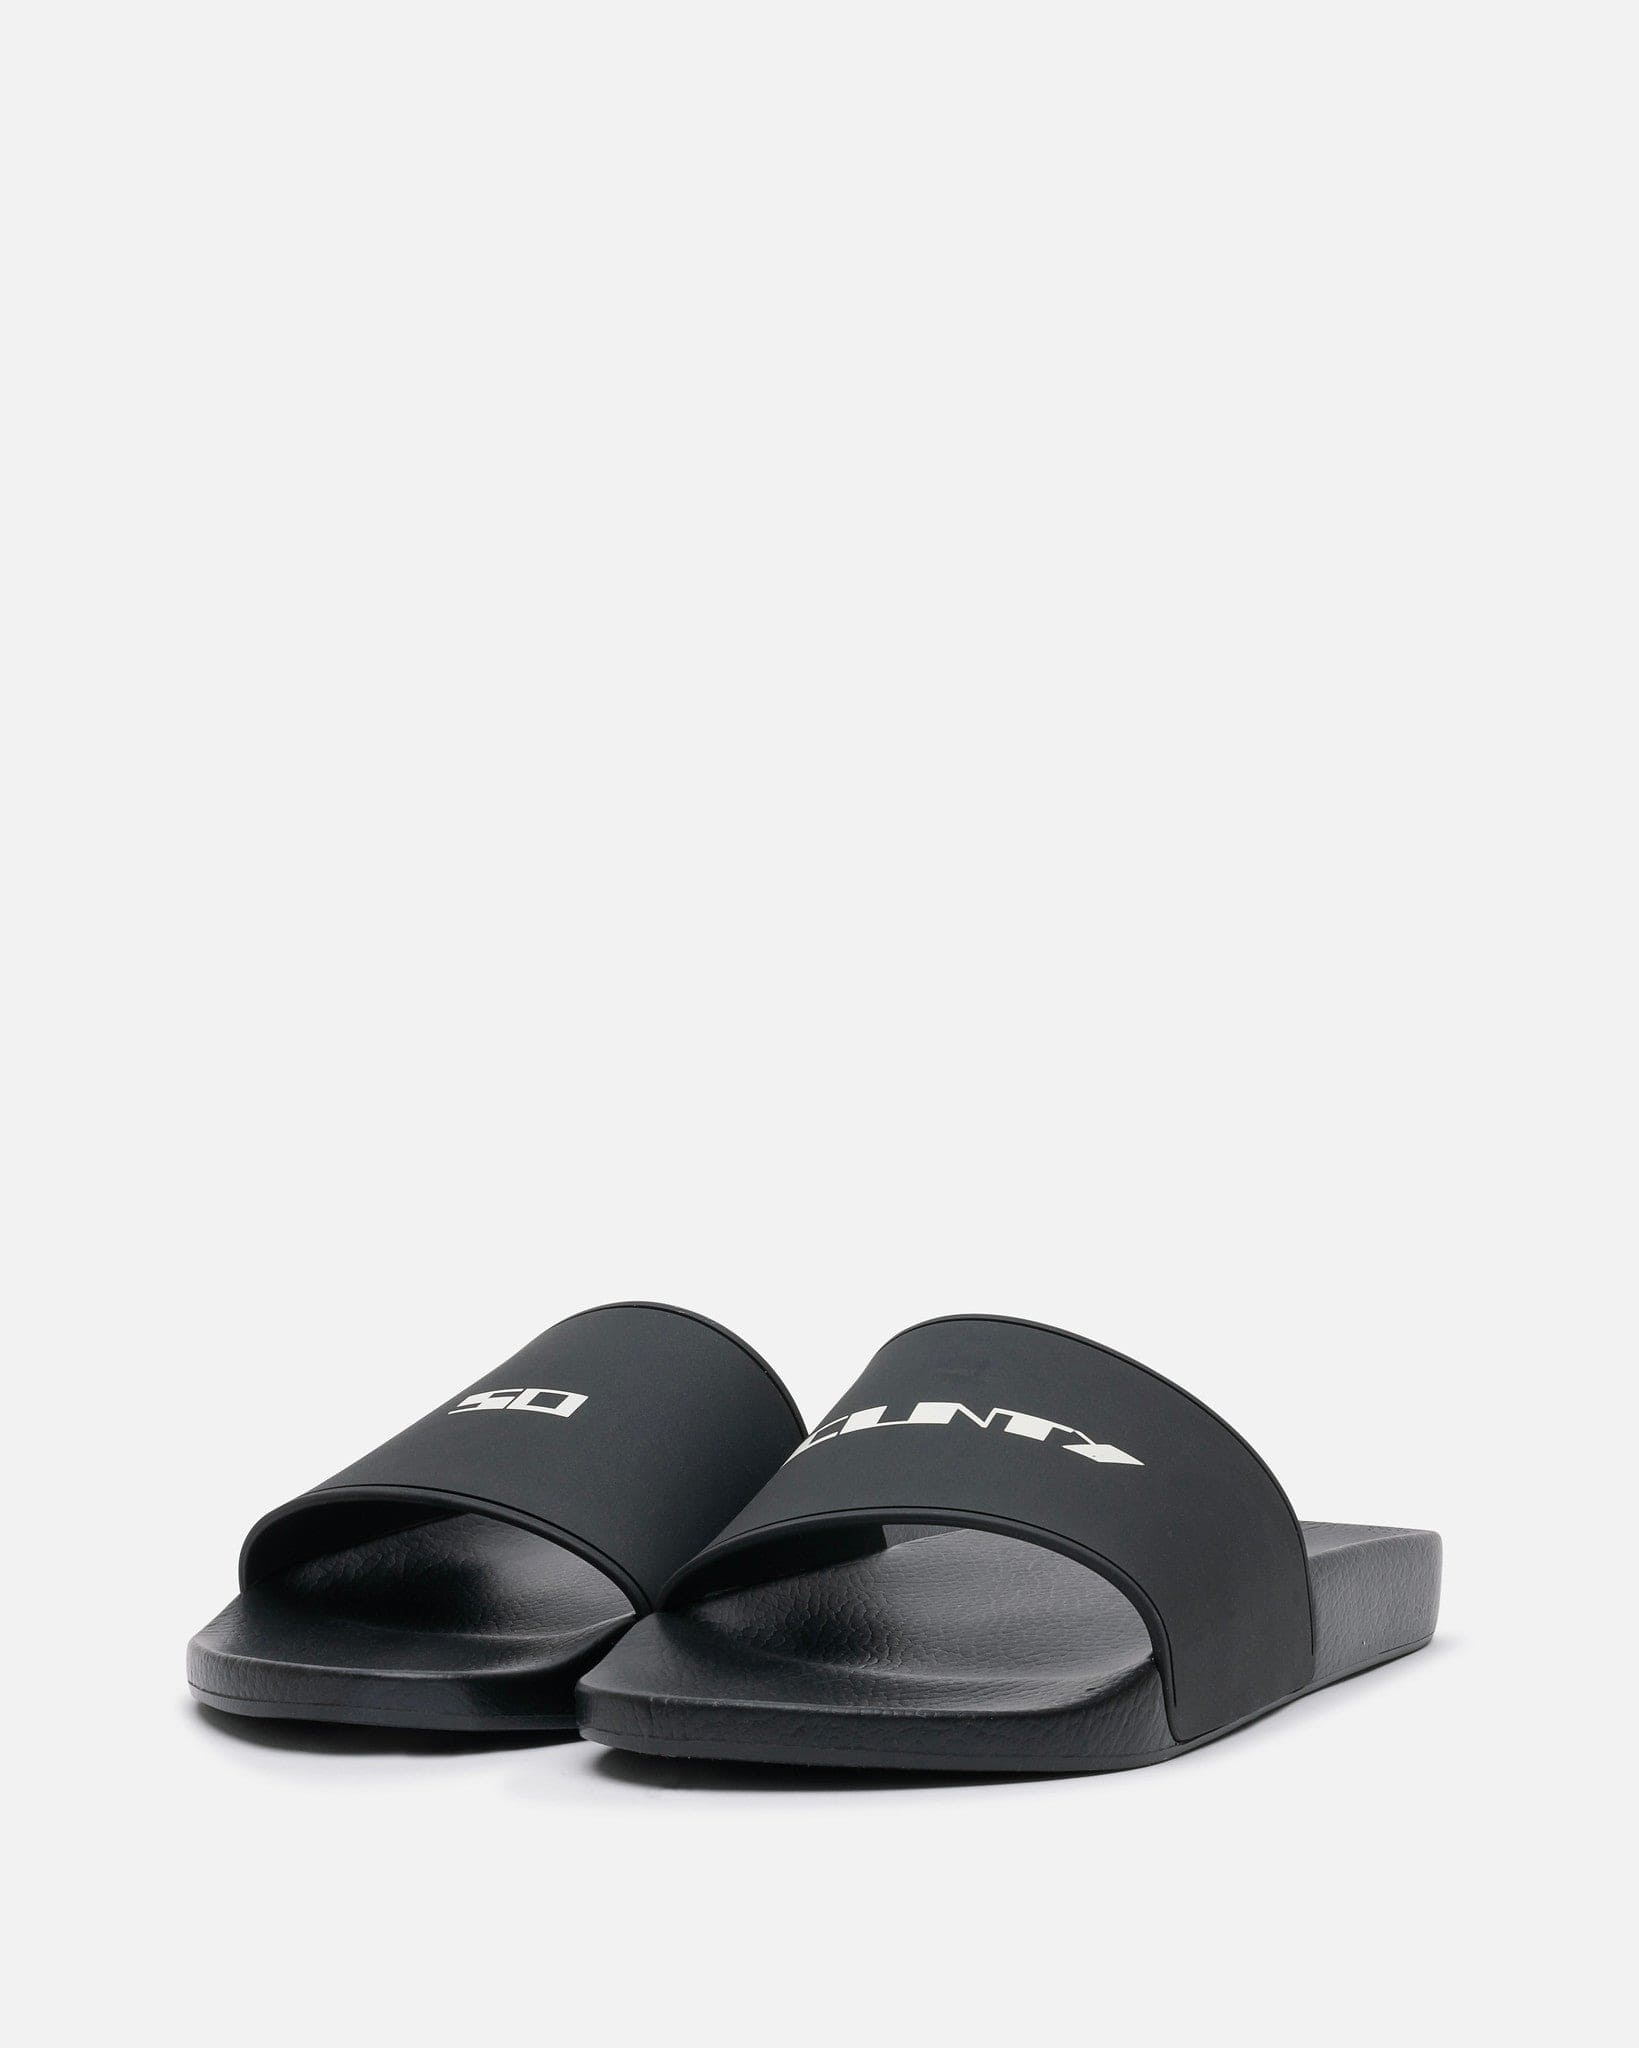 Rick Owens DRKSHDW Men's Shoes Rubber Slides in Black/Milk